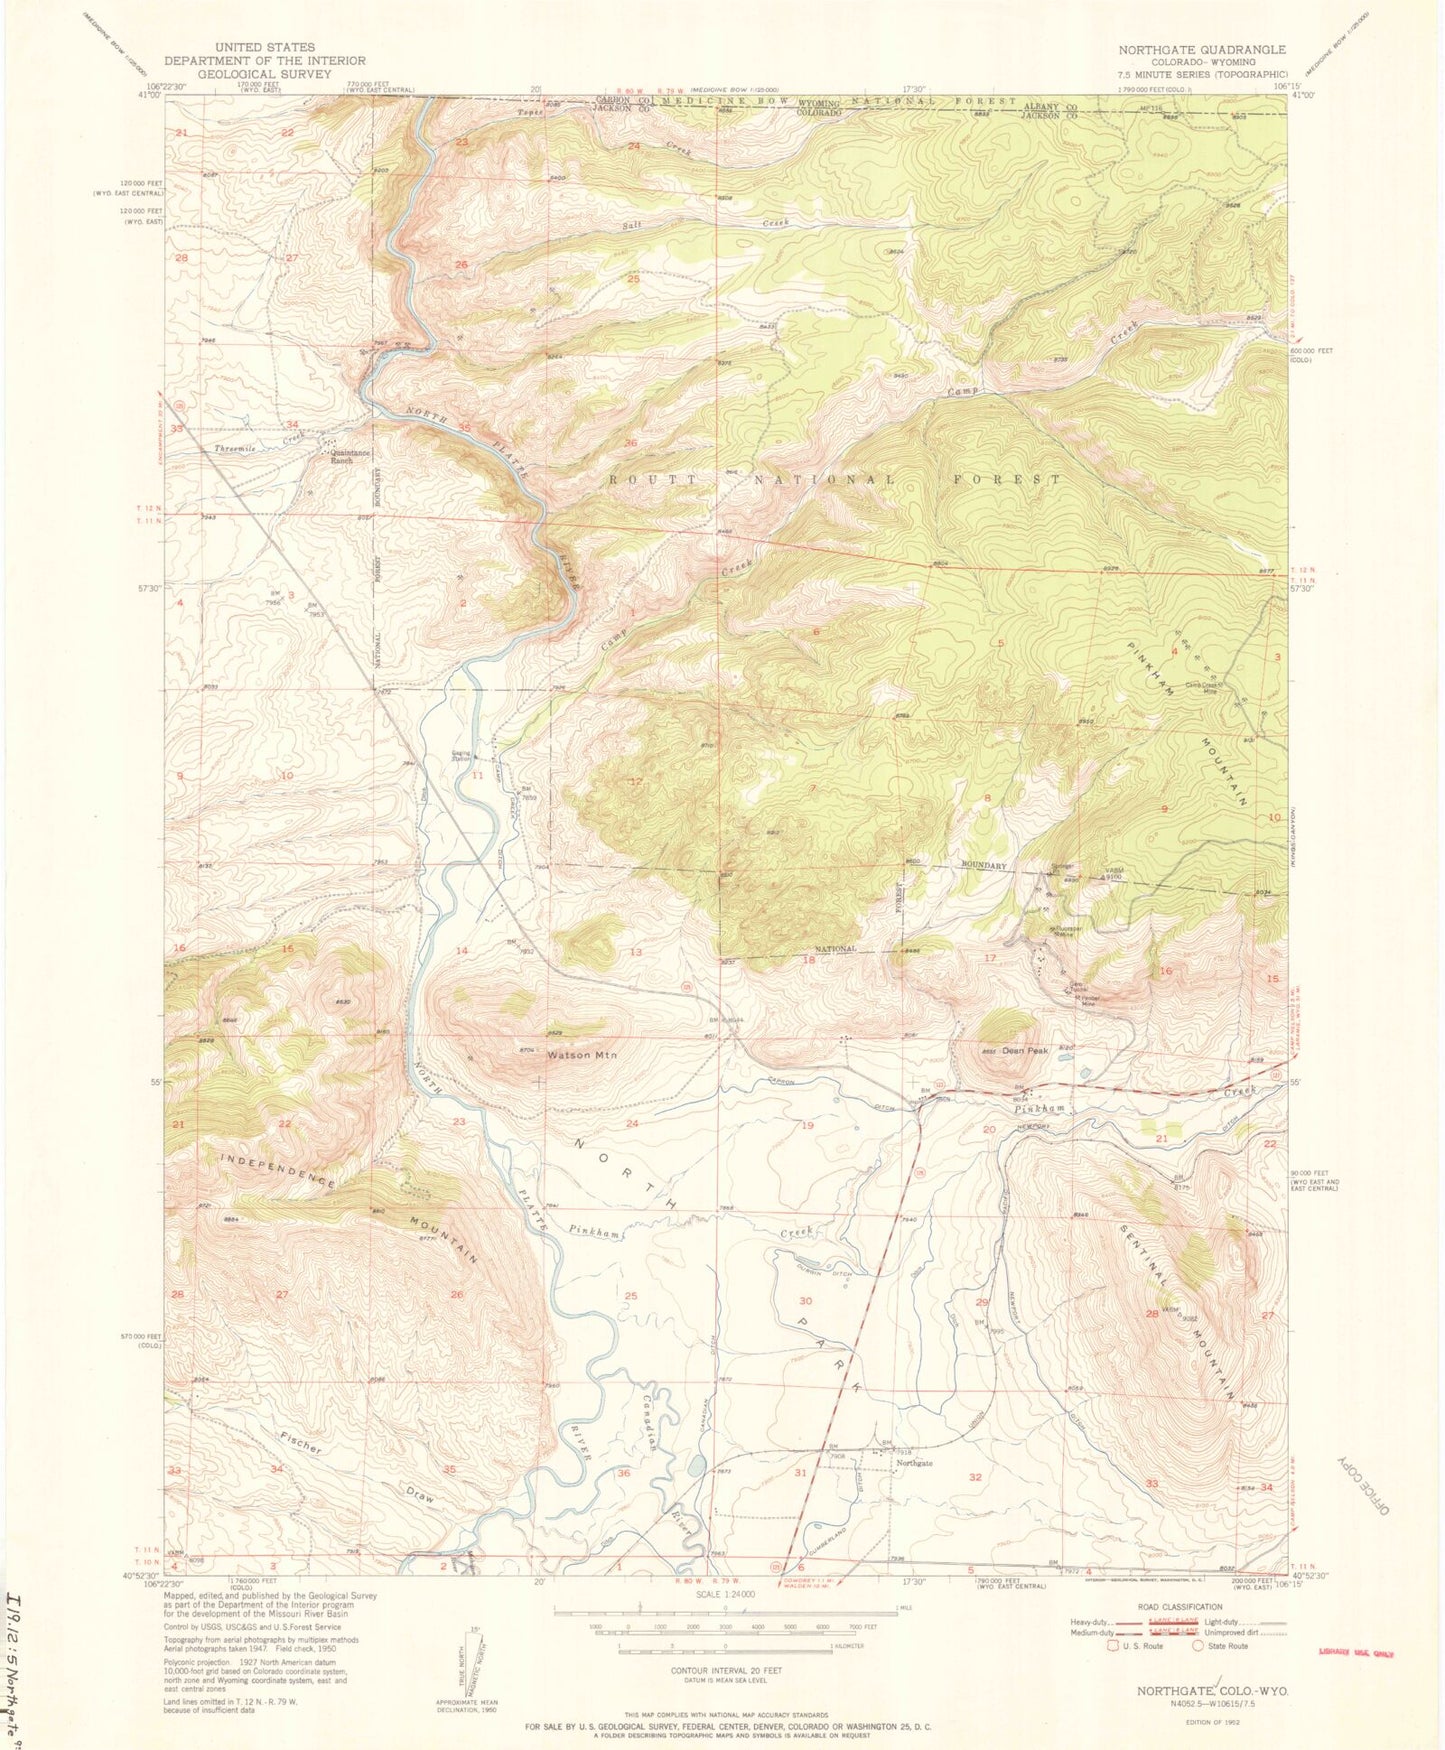 Classic USGS Northgate Colorado 7.5'x7.5' Topo Map Image